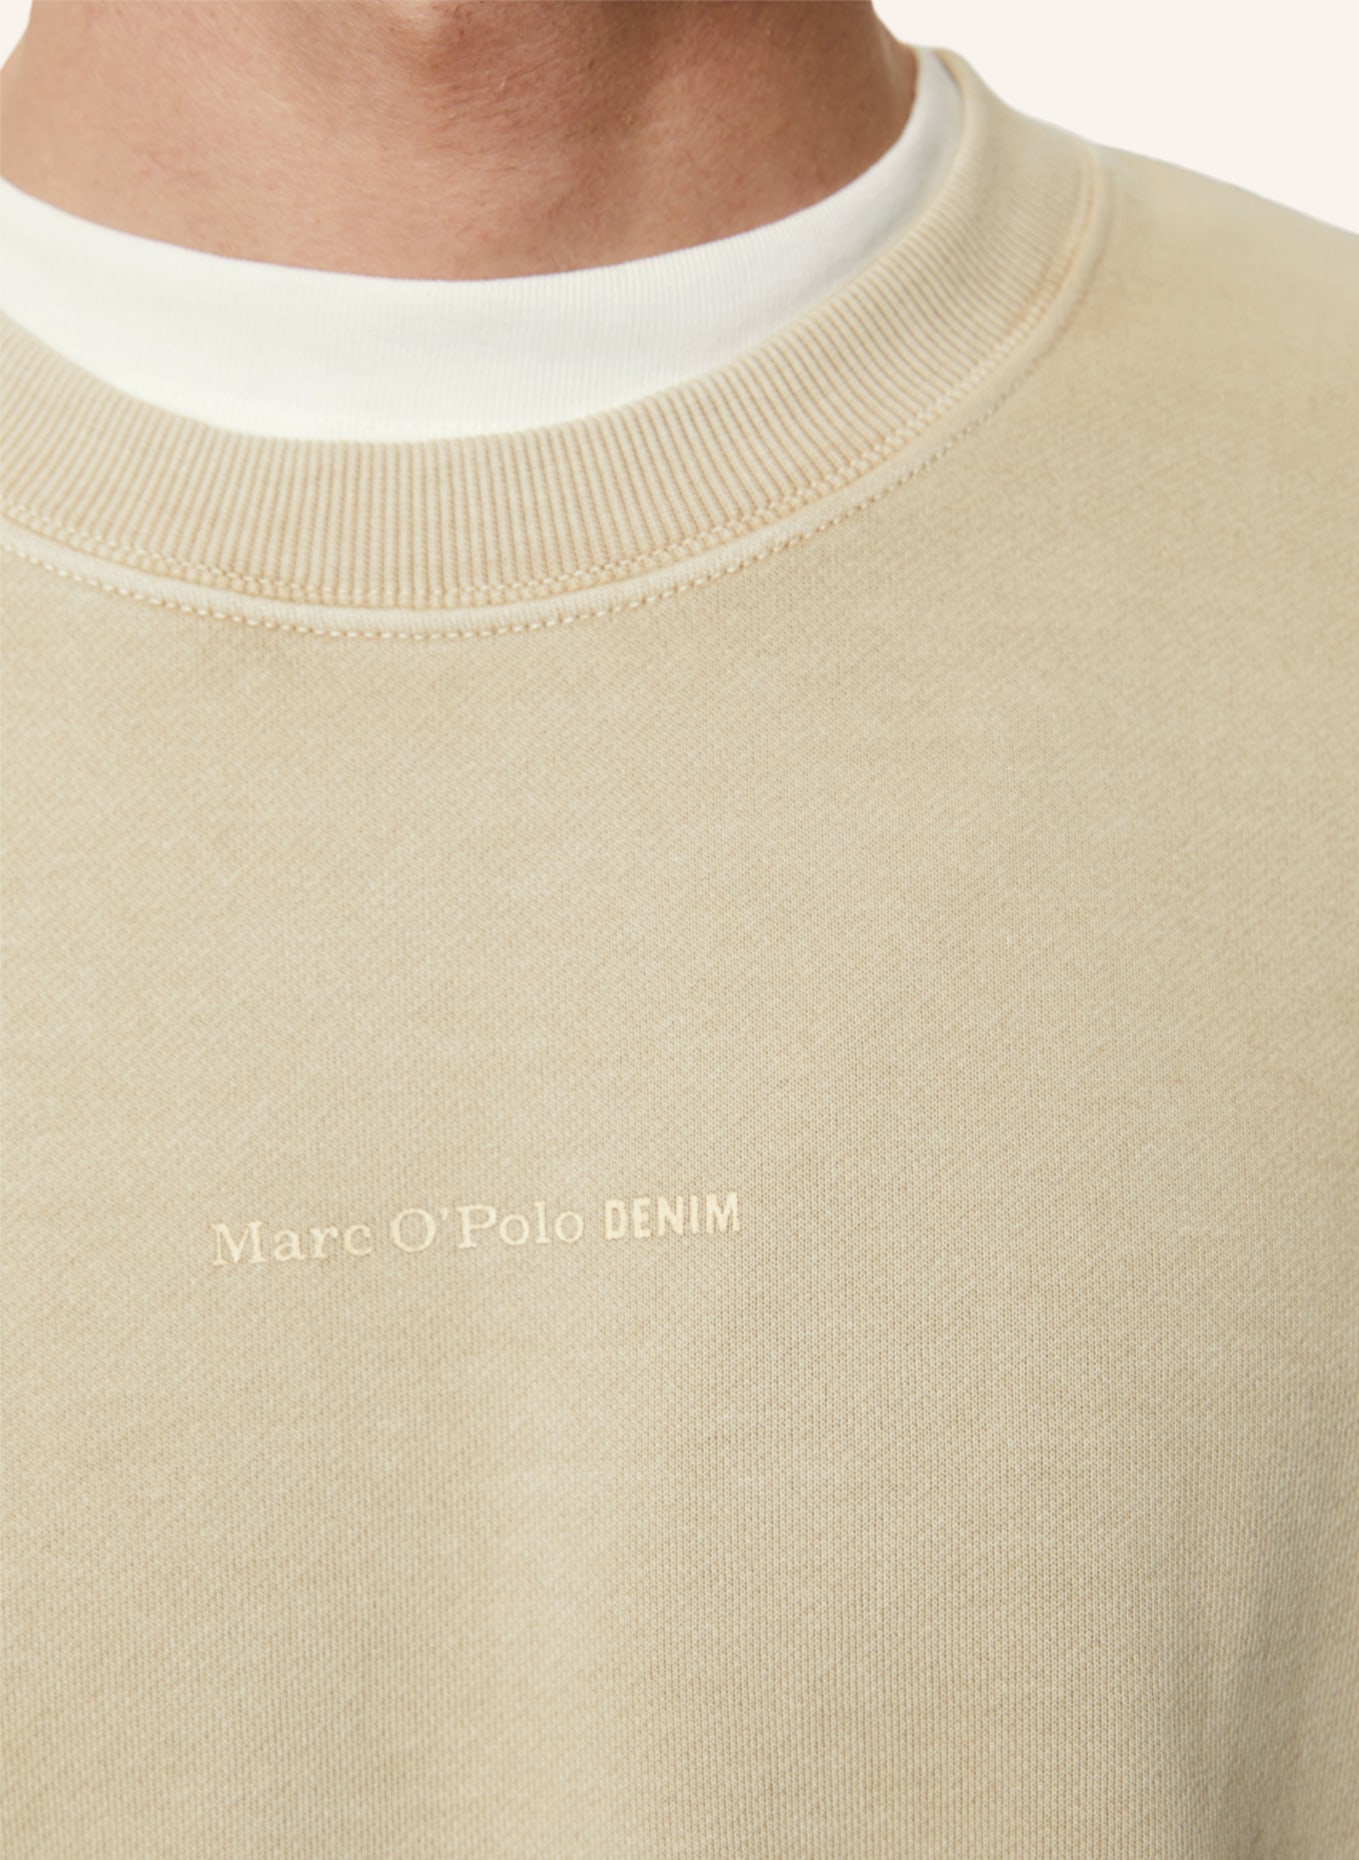 Marc O'Polo DENIM Sweatshirt, Farbe: BEIGE (Bild 3)